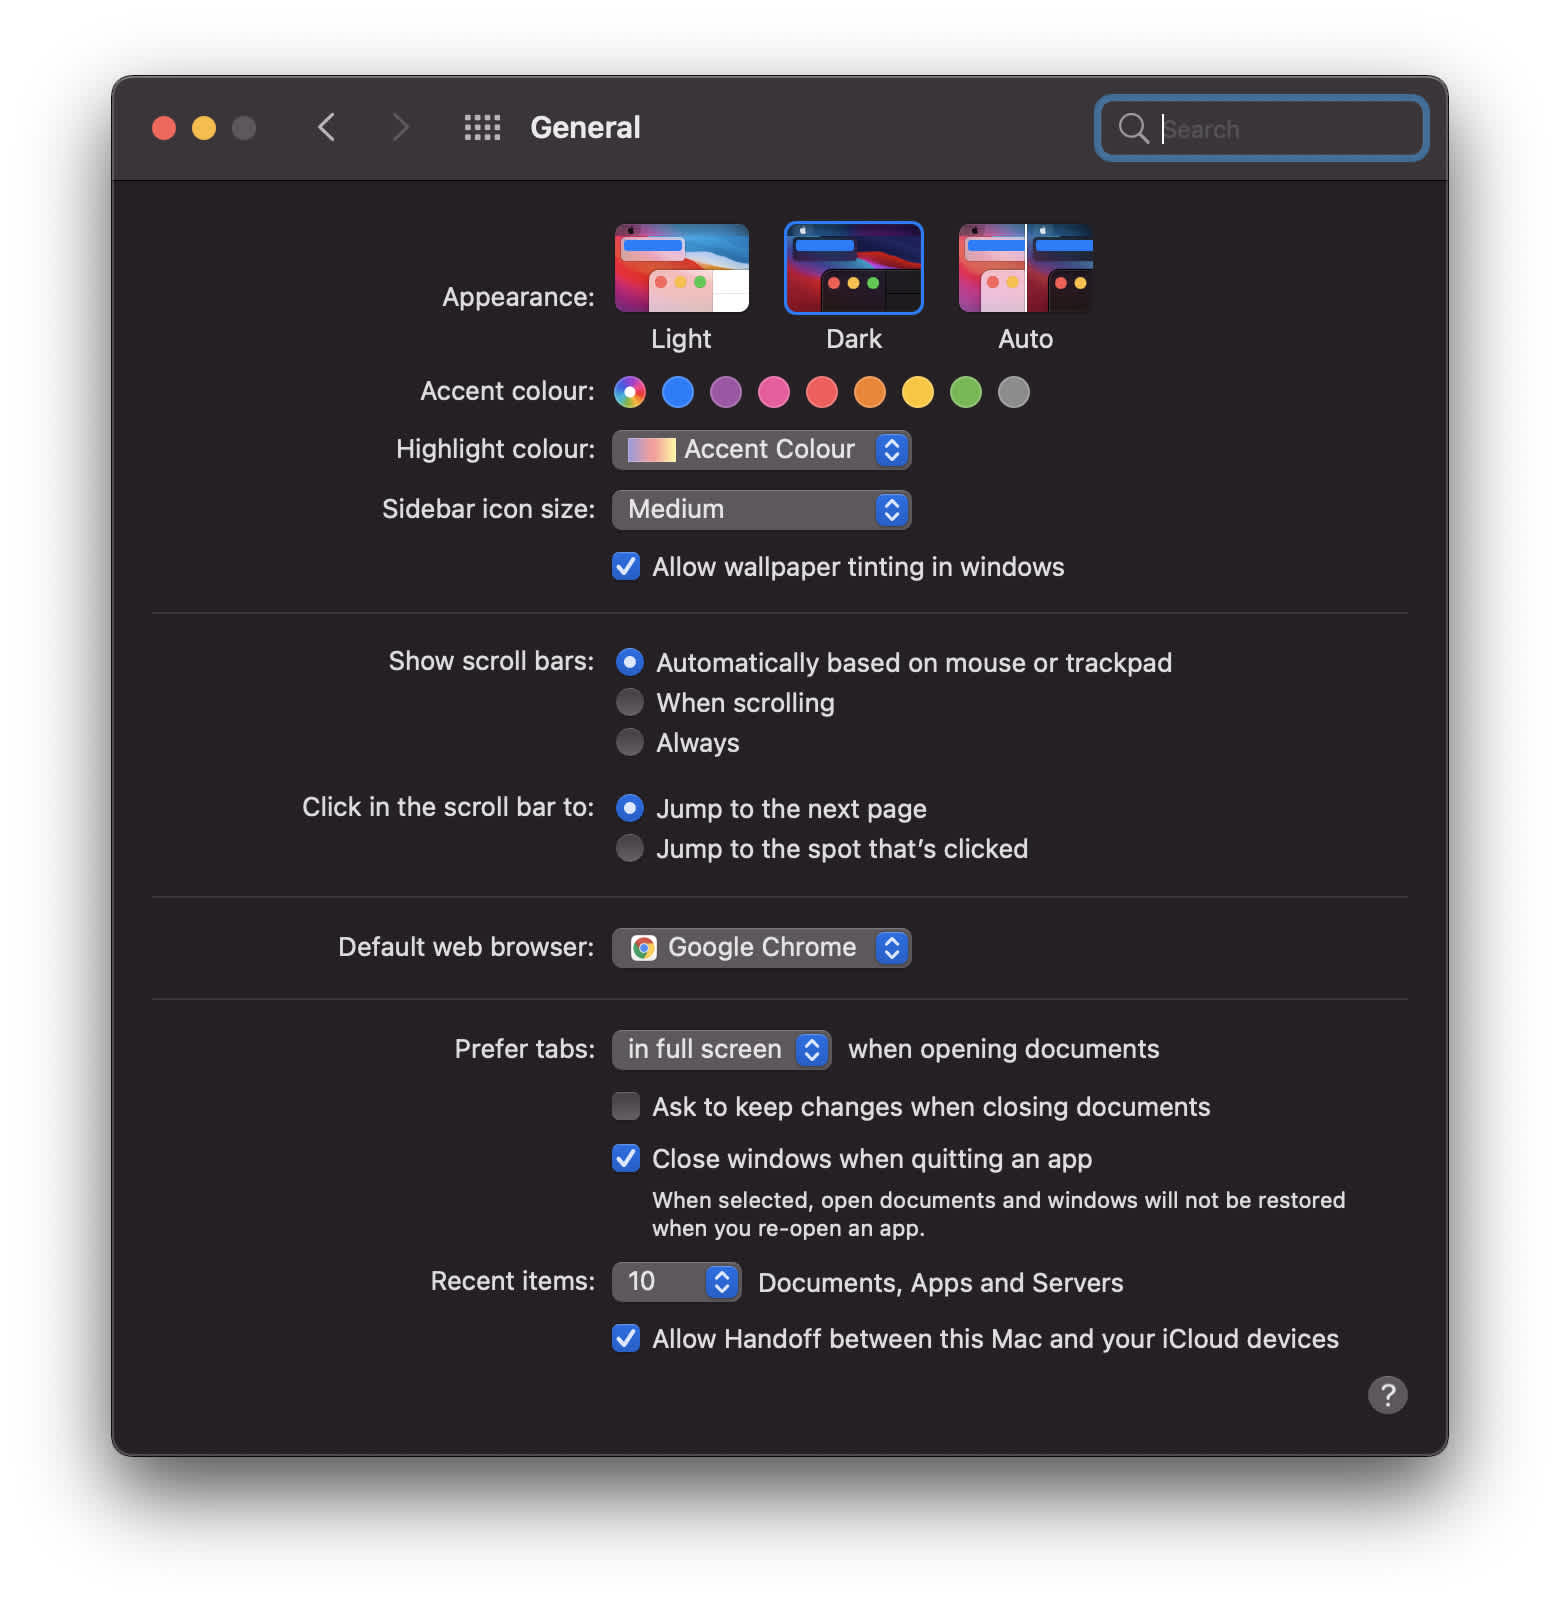 Enabling dark mode on Macbook